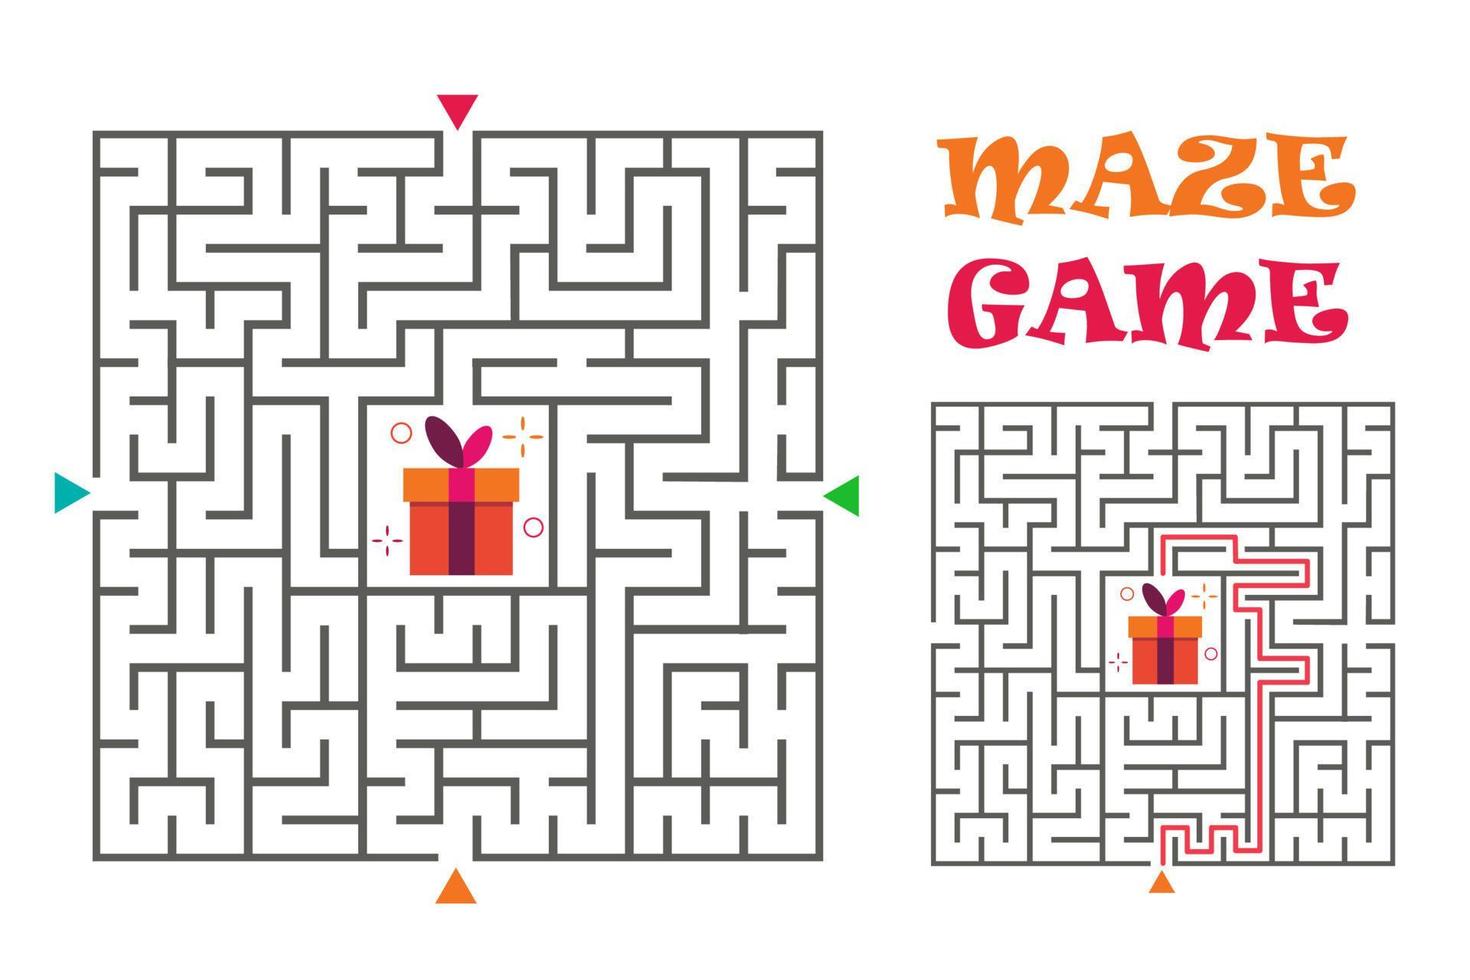 jeu de labyrinthe de labyrinthe carré pour les enfants. énigme logique. quatre entrées et une bonne façon d'aller. illustration vectorielle plate isolée sur fond blanc. vecteur